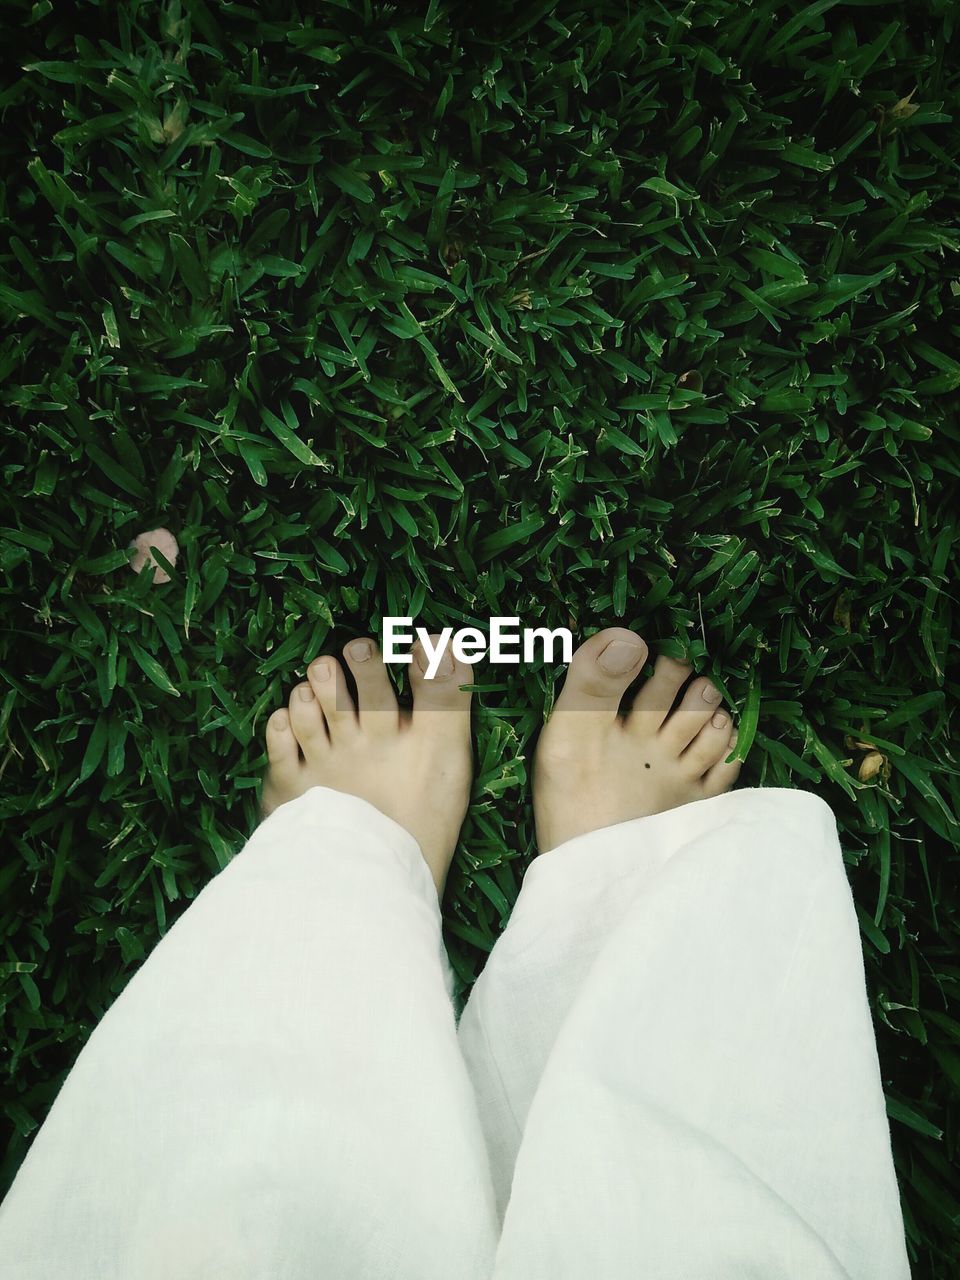 Bare feet on grass